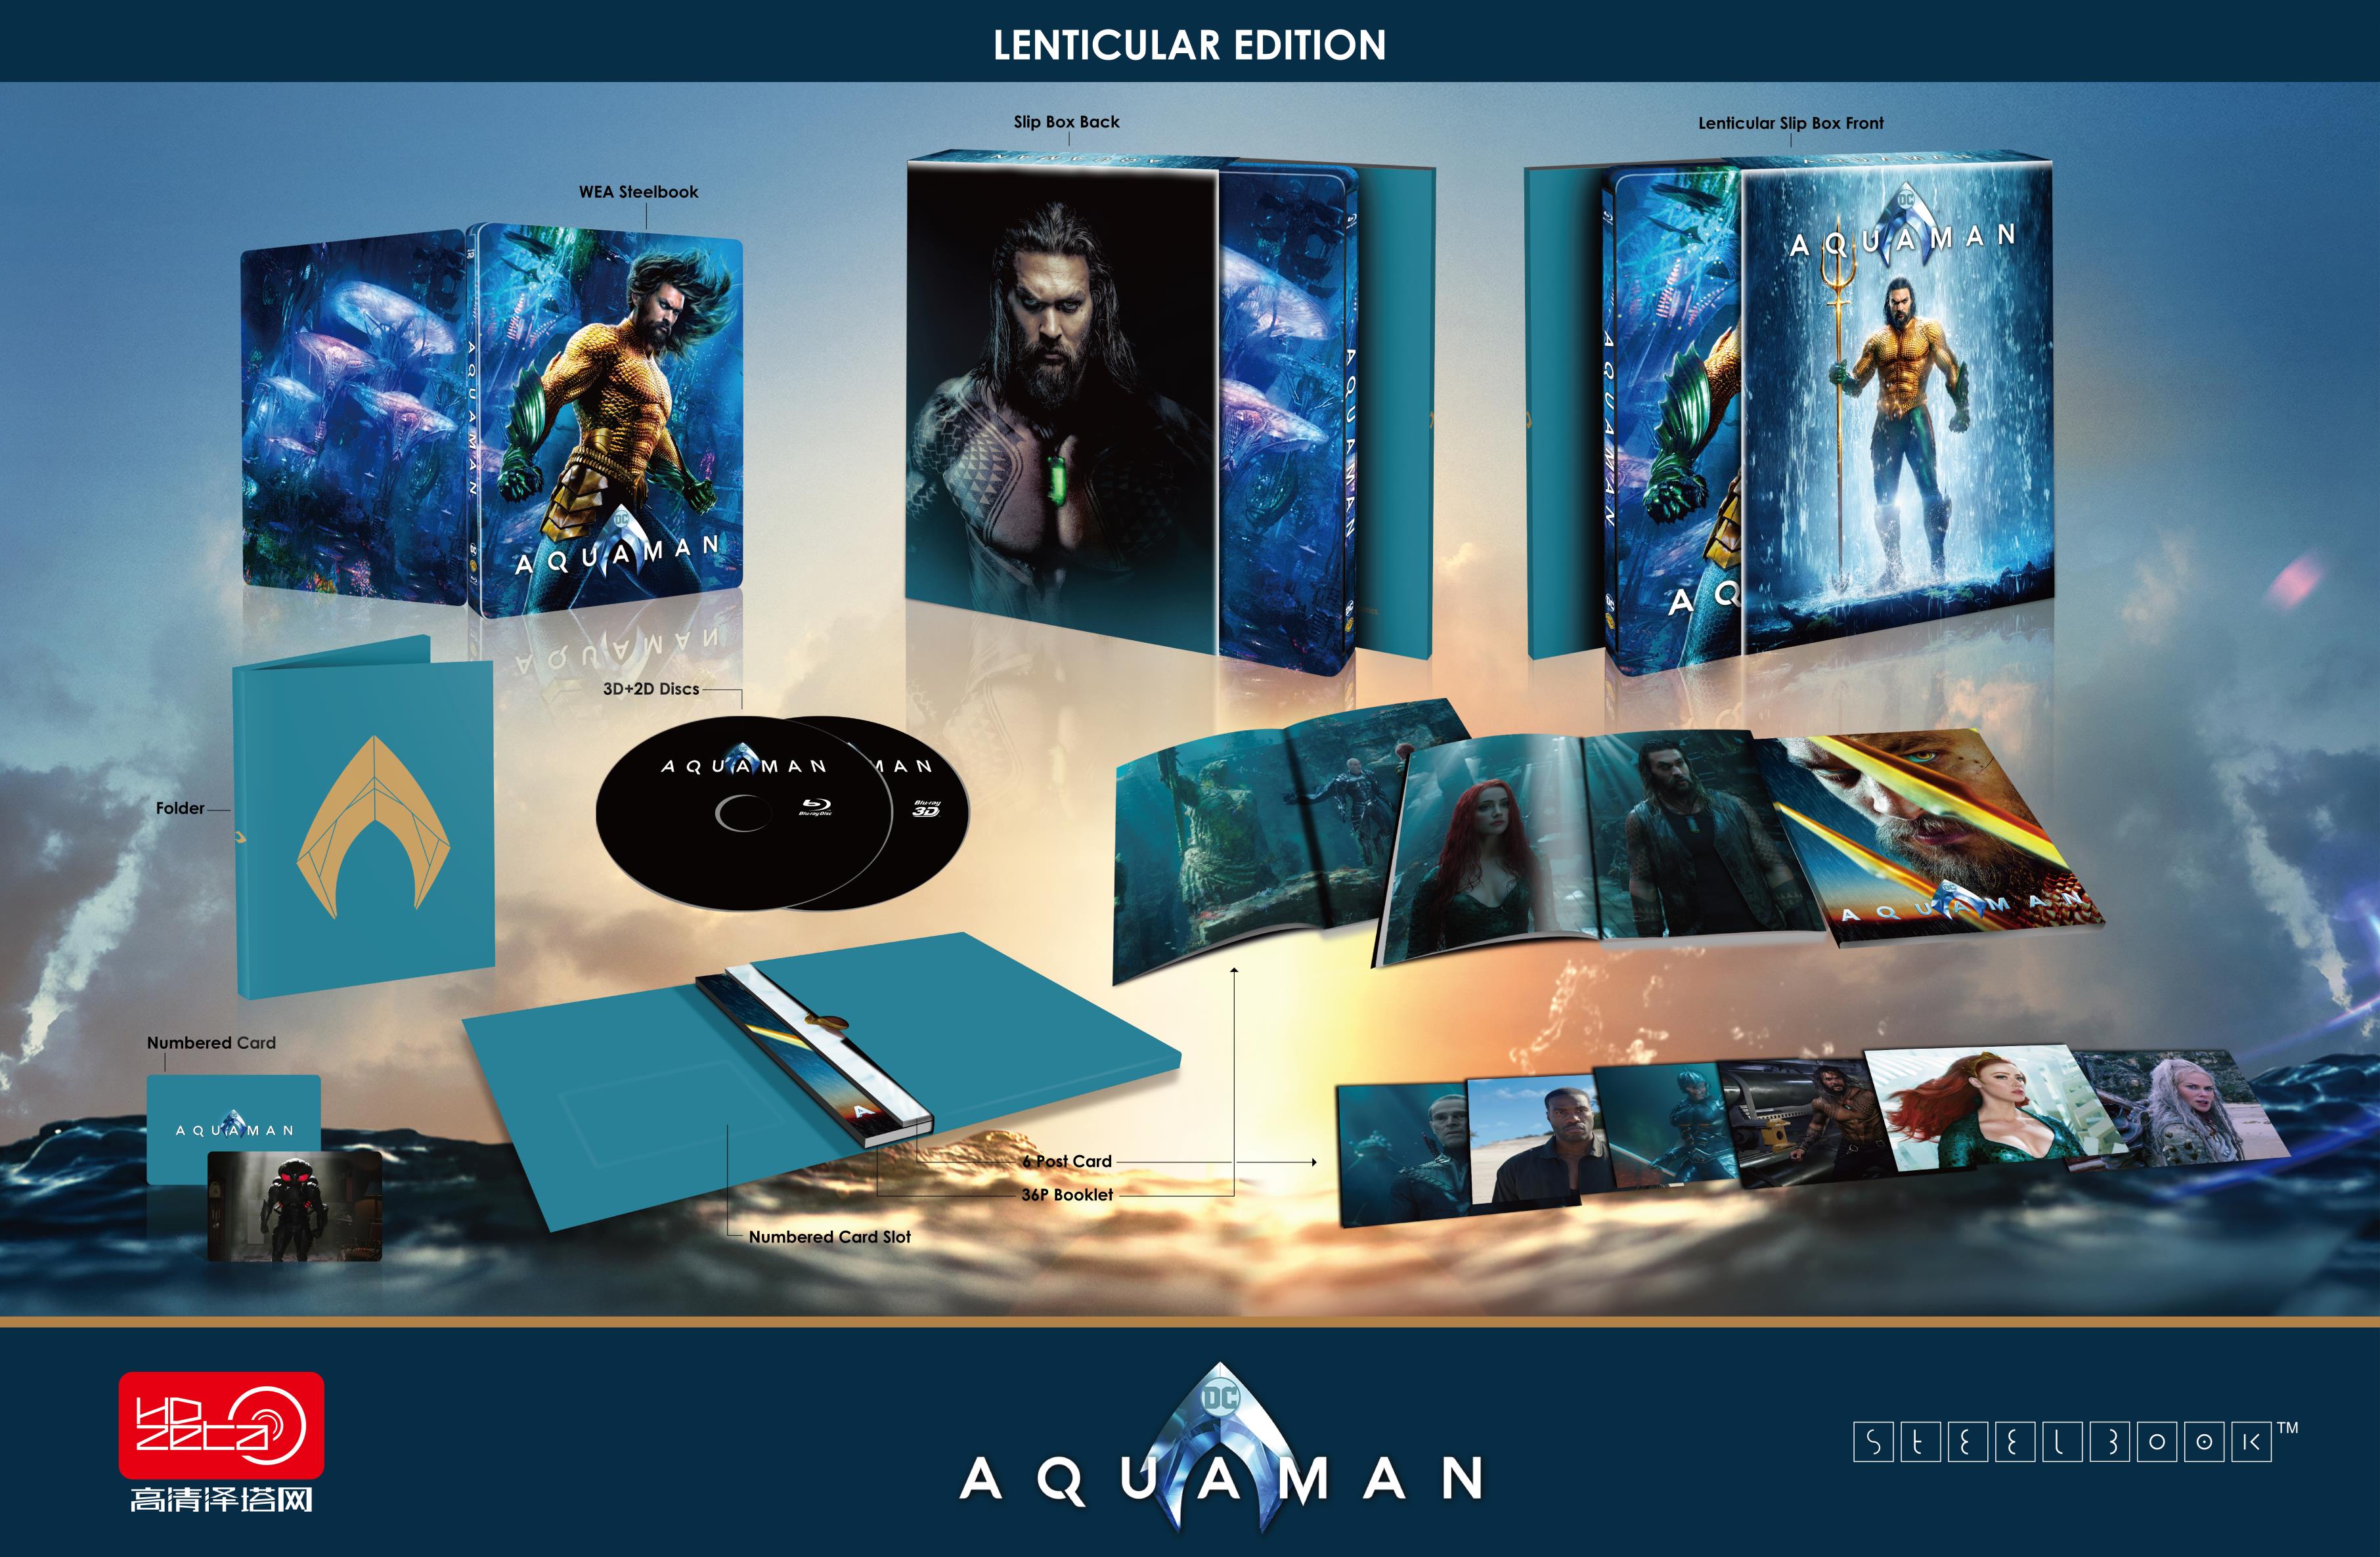 Aquaman HDzeta Exclsive Single Lenticular Edition